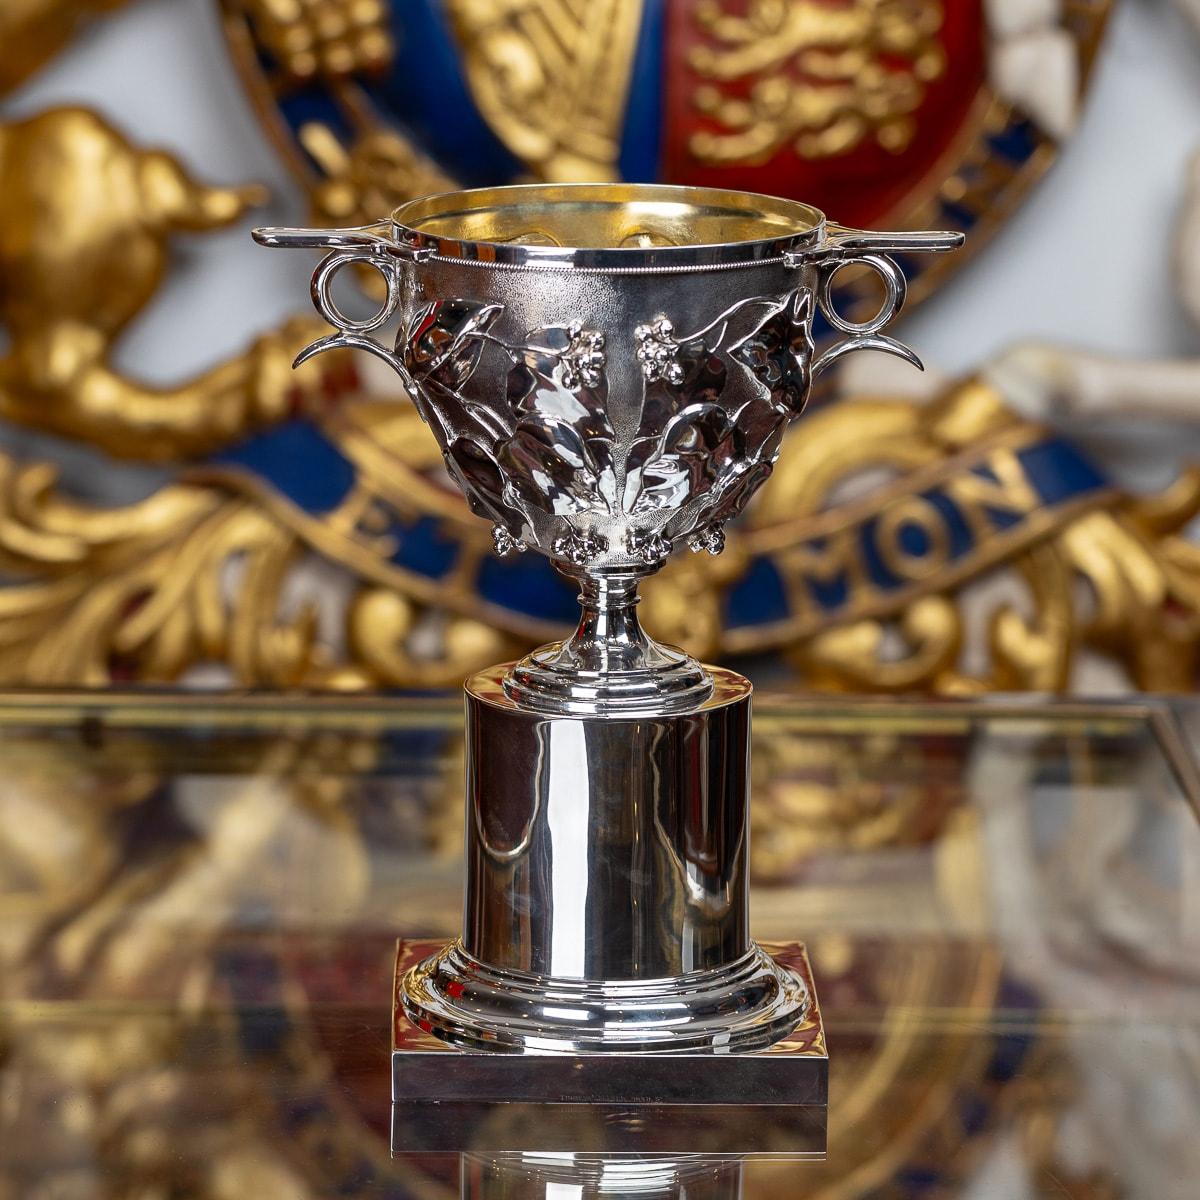 Antike viktorianische Skyphos-Tasse aus massivem Silber des 19. Jahrhunderts in traditioneller Form auf einem flachen, kolbenförmigen Sockel, mit schwerem Kaliber und einem mit Stechpalmenblättern und -beeren ziselierten Körper auf mattem Grund,